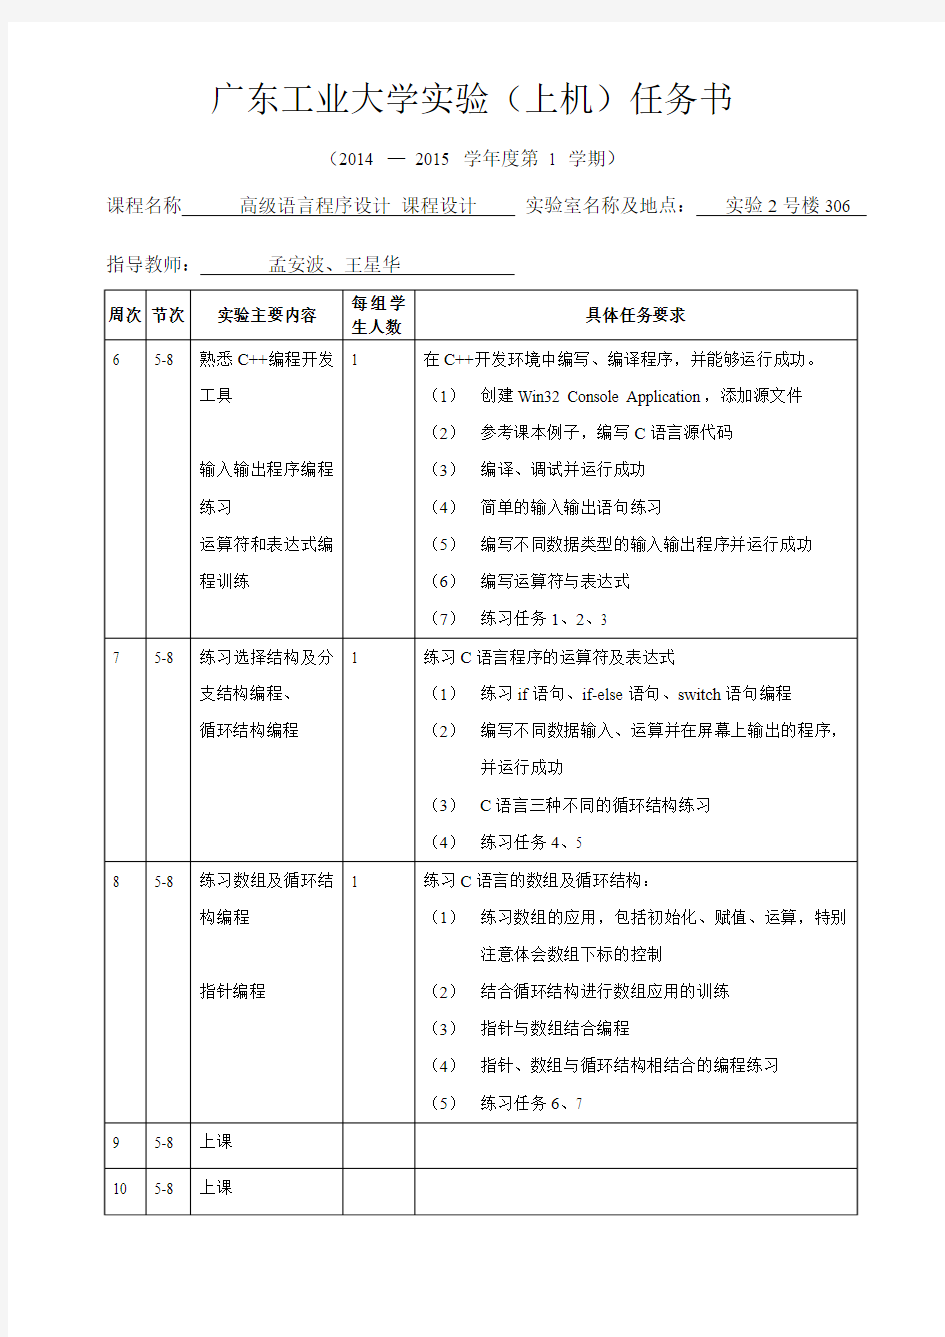 广东工业大学实验(上机)任务书2014版